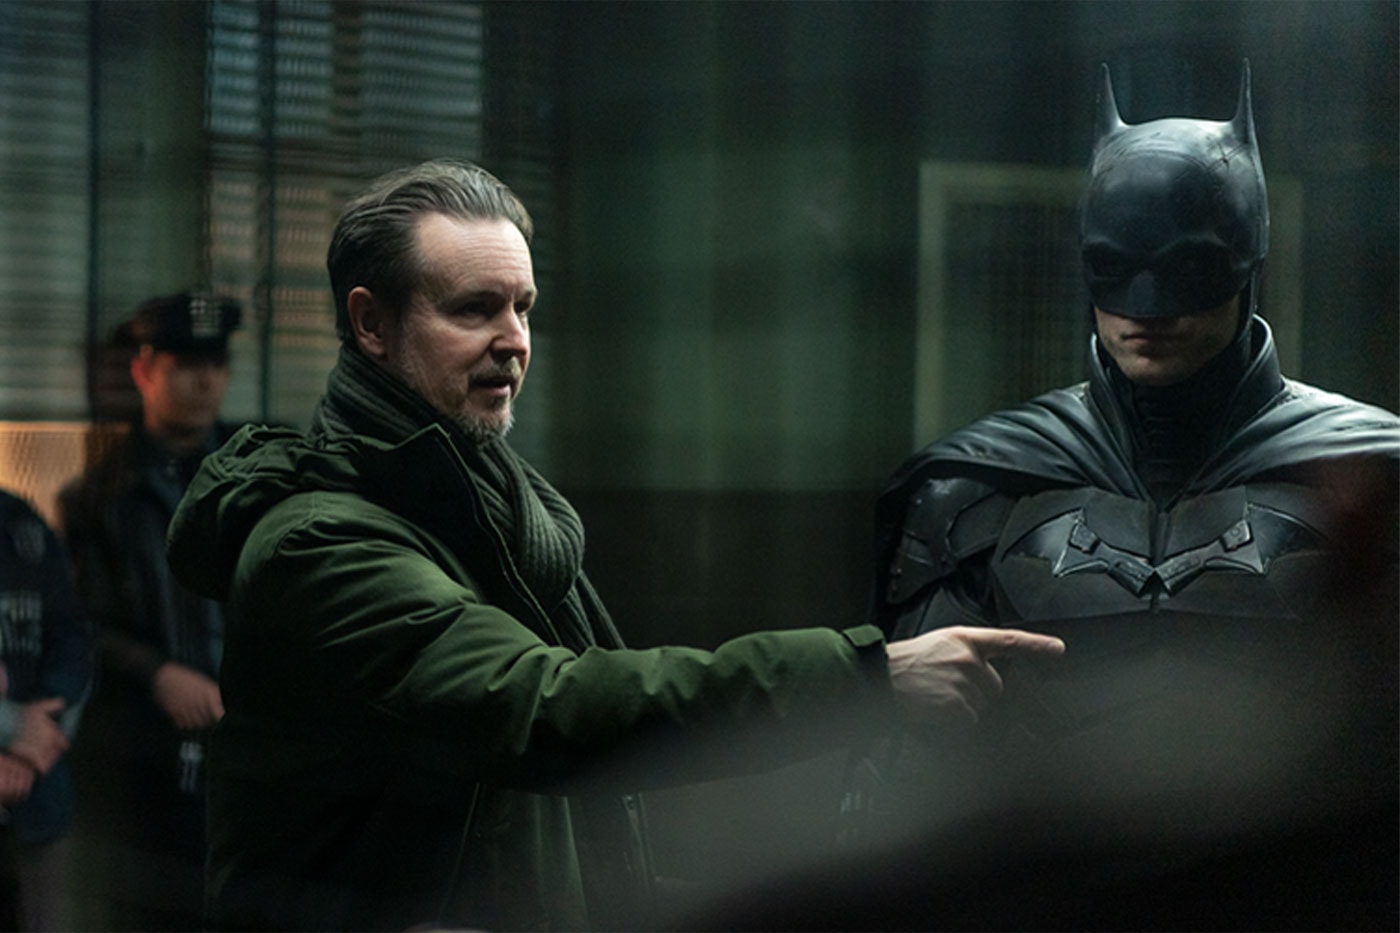 導演 Matt Reeves 與 Robert Pattinson 談及《蝙蝠俠 The Batman》電影與角色塑造過程